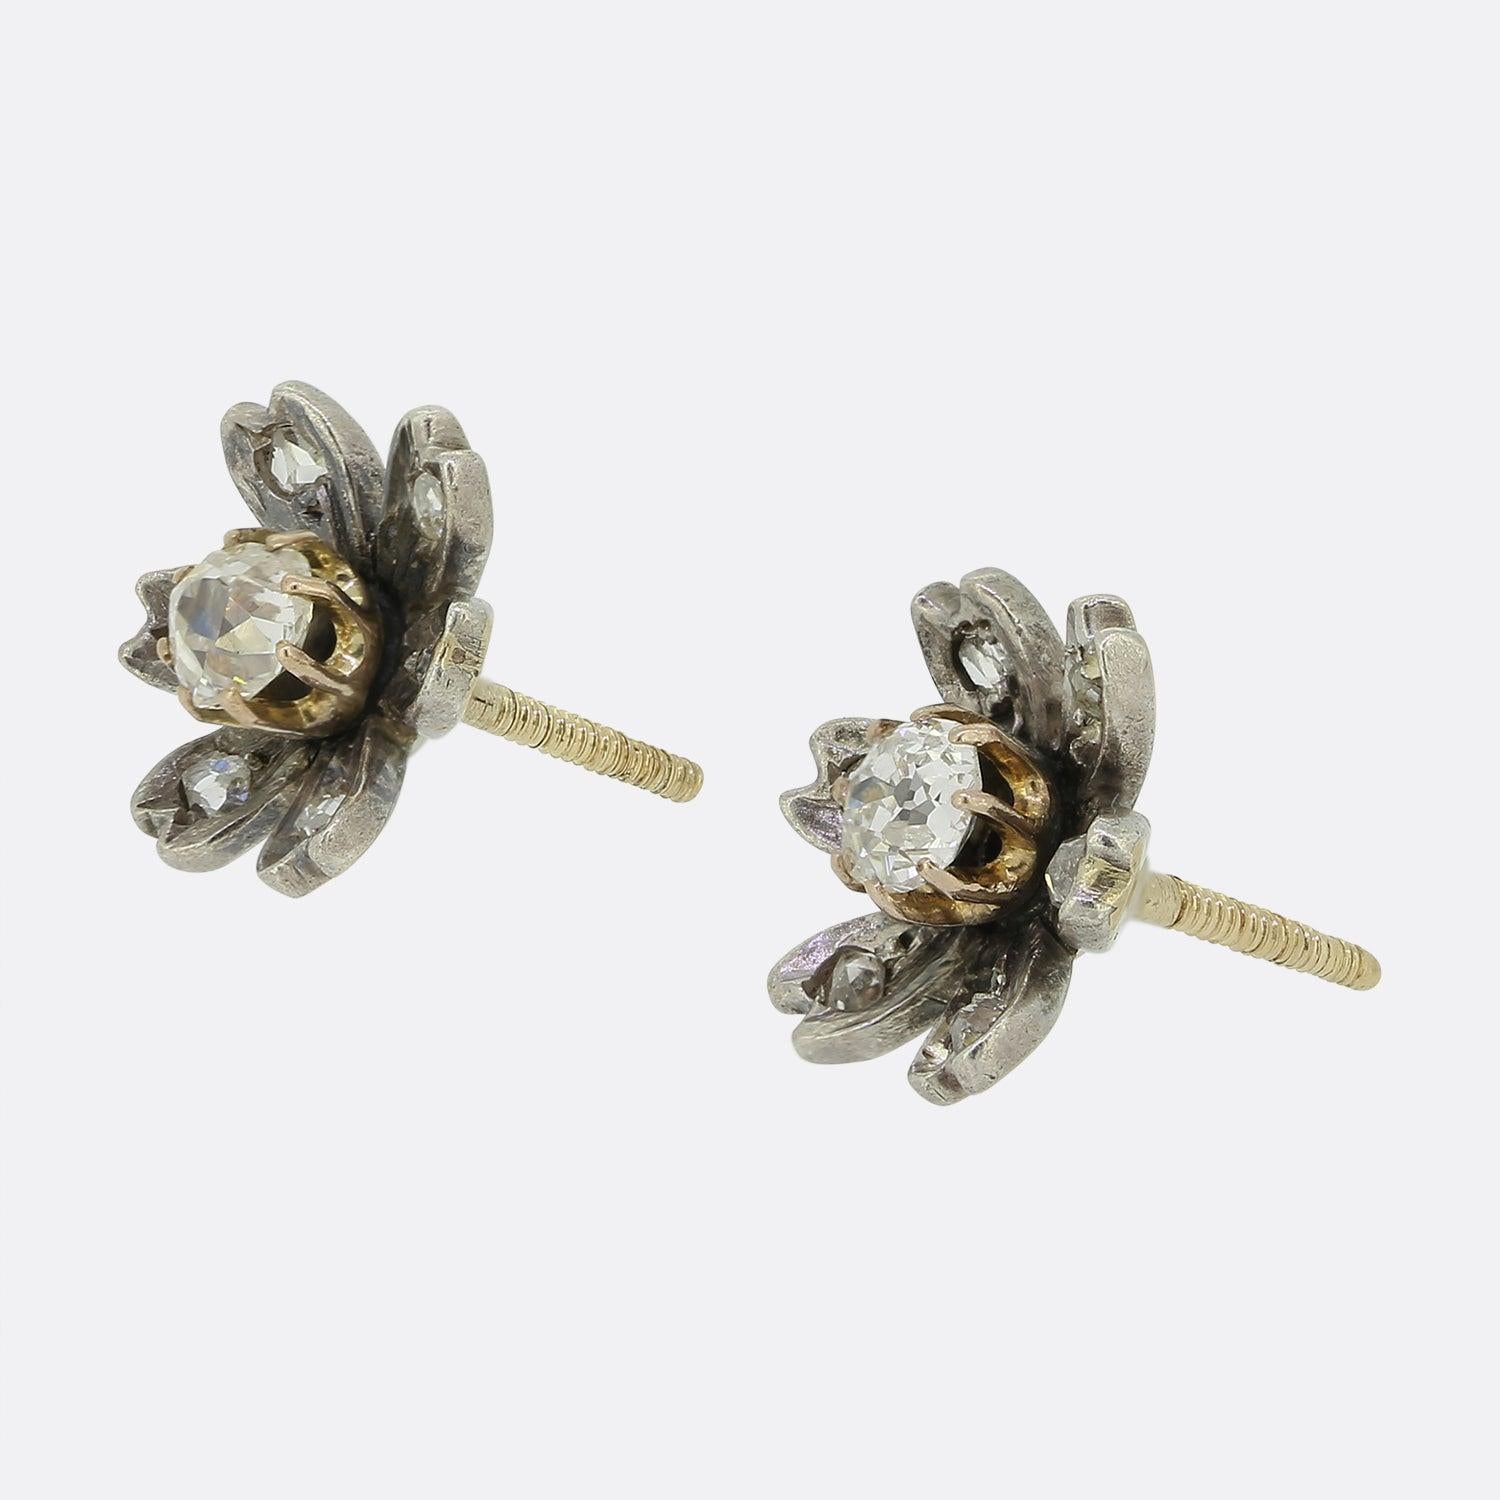 Hier haben wir ein antikes Paar Diamant-Ohrstecker aus der viktorianischen Ära. Jedes Stück wurde aus Silber in Form eines Blütenkopfes gefertigt, wobei jedes einzelne Blütenblatt einen einzelnen Diamanten im Rosenschliff beherbergt. In der Mitte